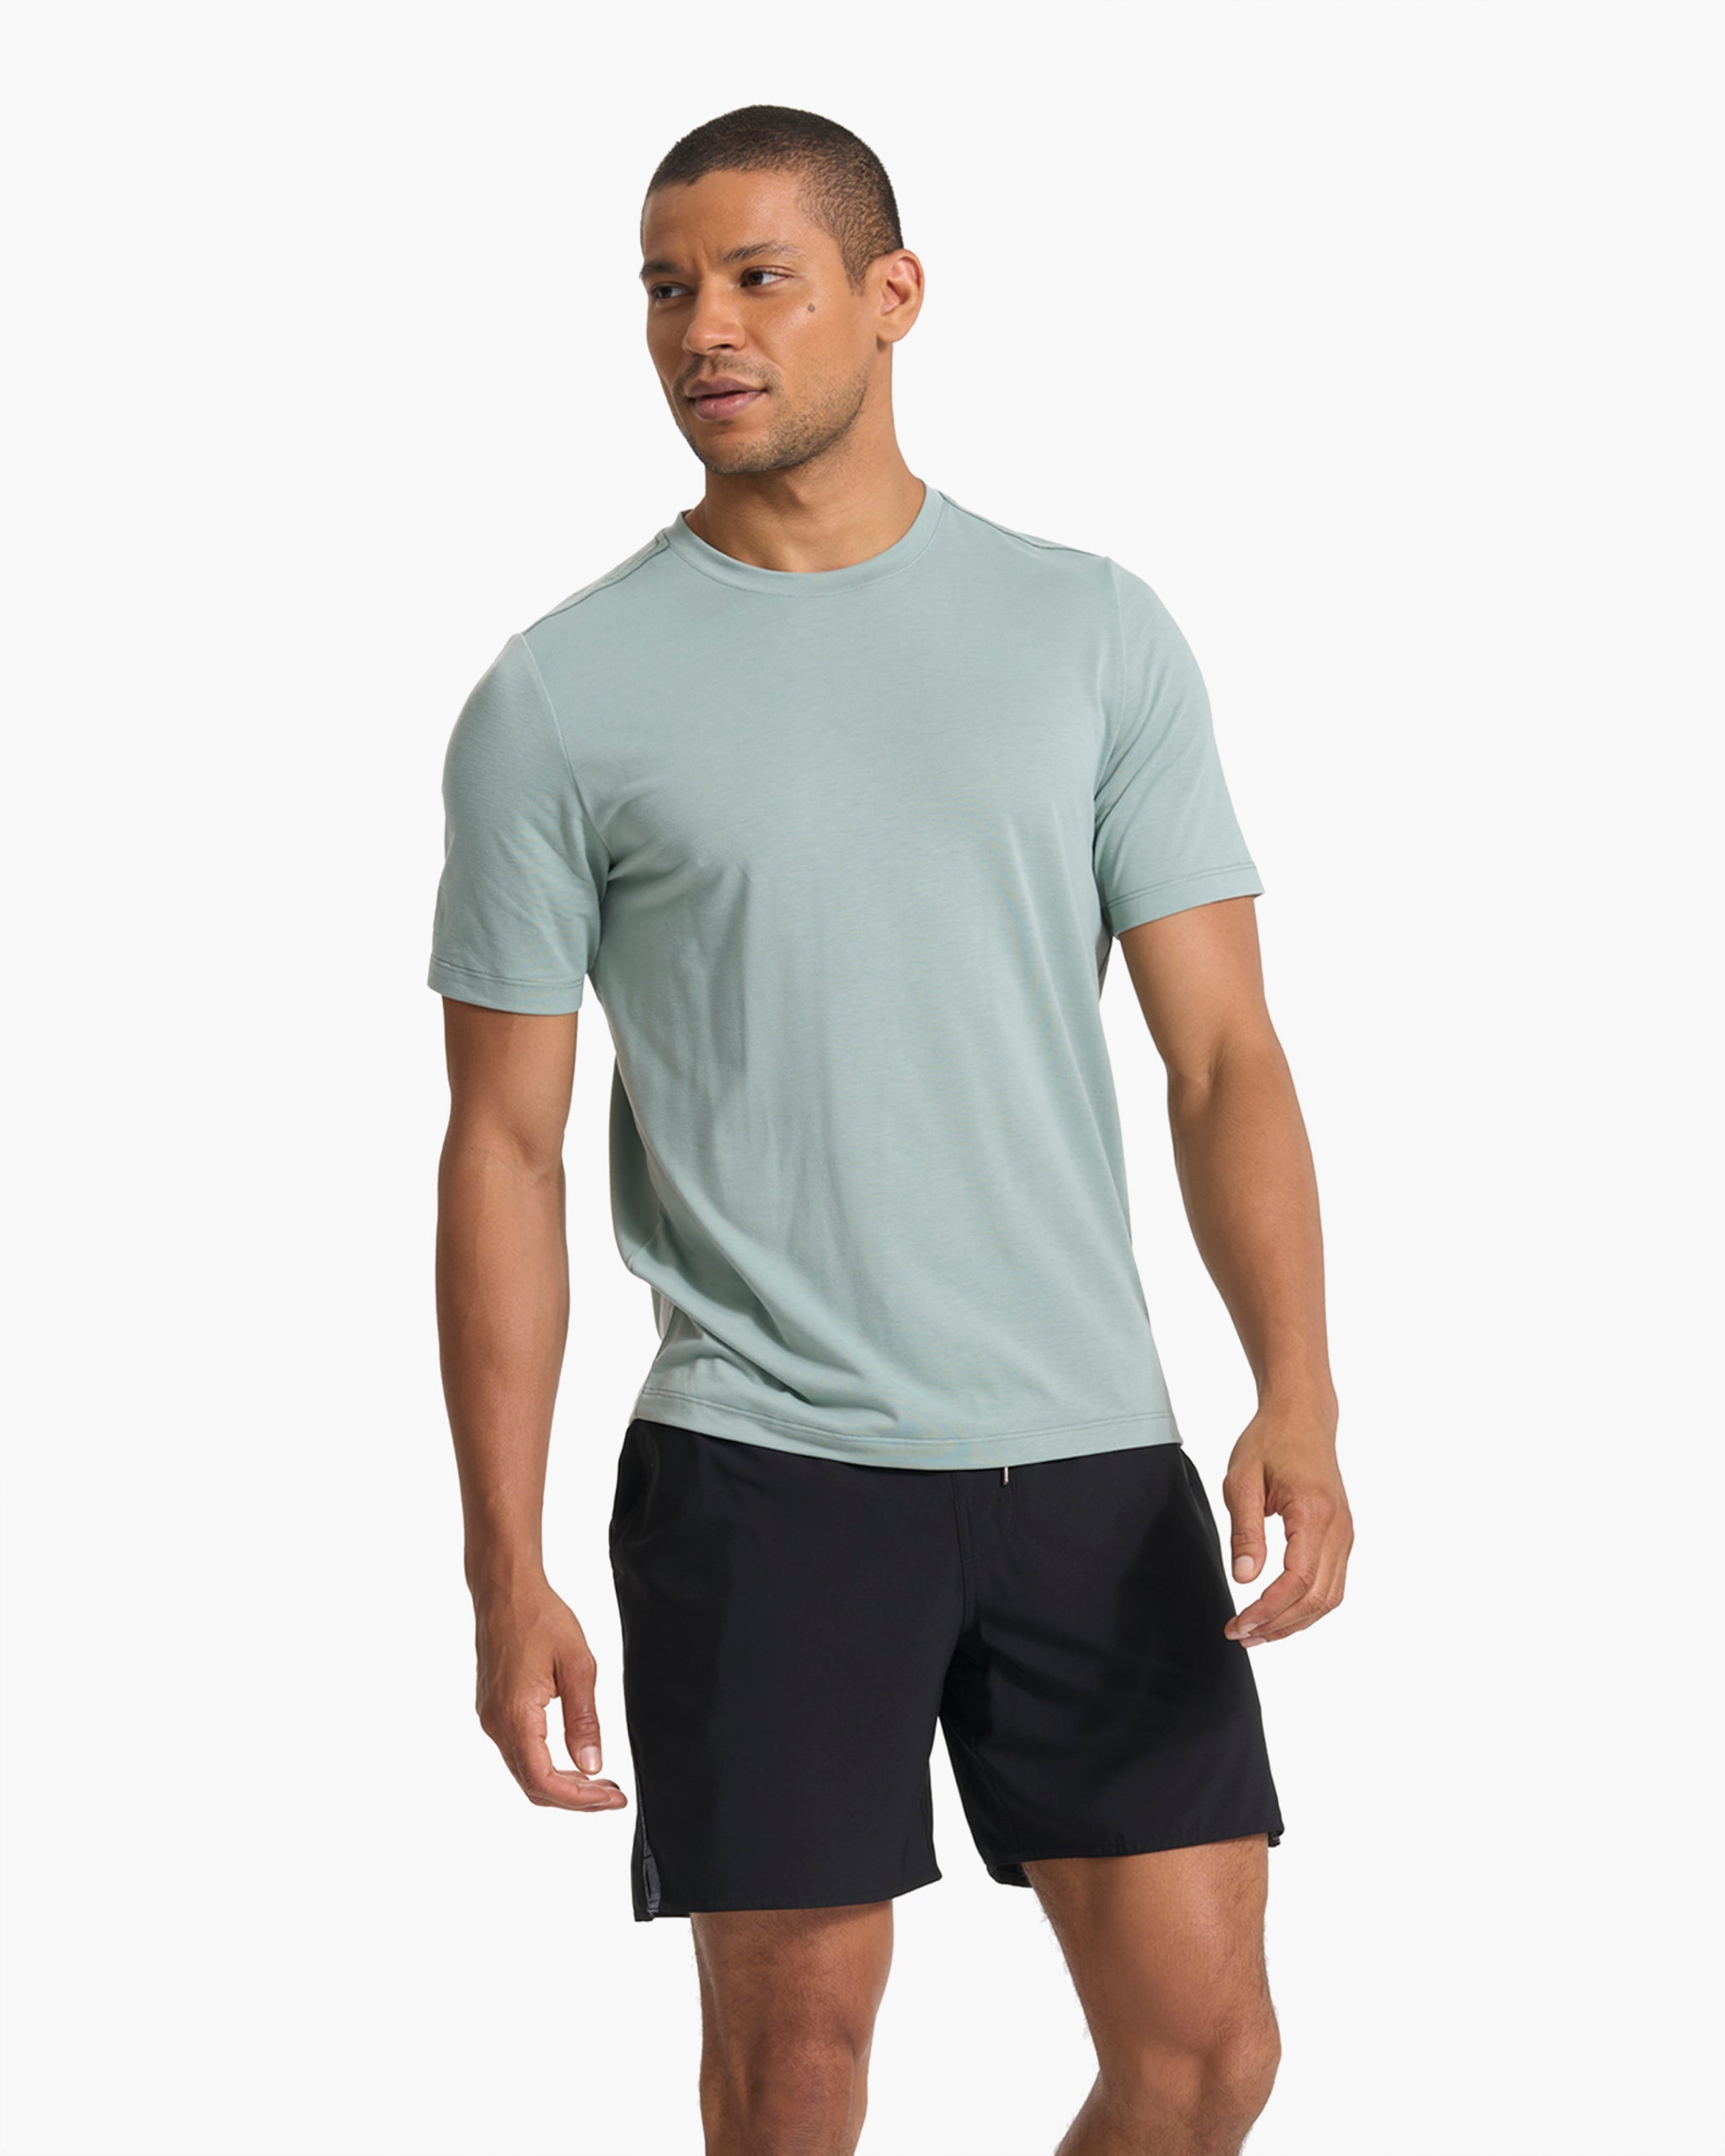 Current Tech Tee | Men's Neptune Soft Shirt | Vuori